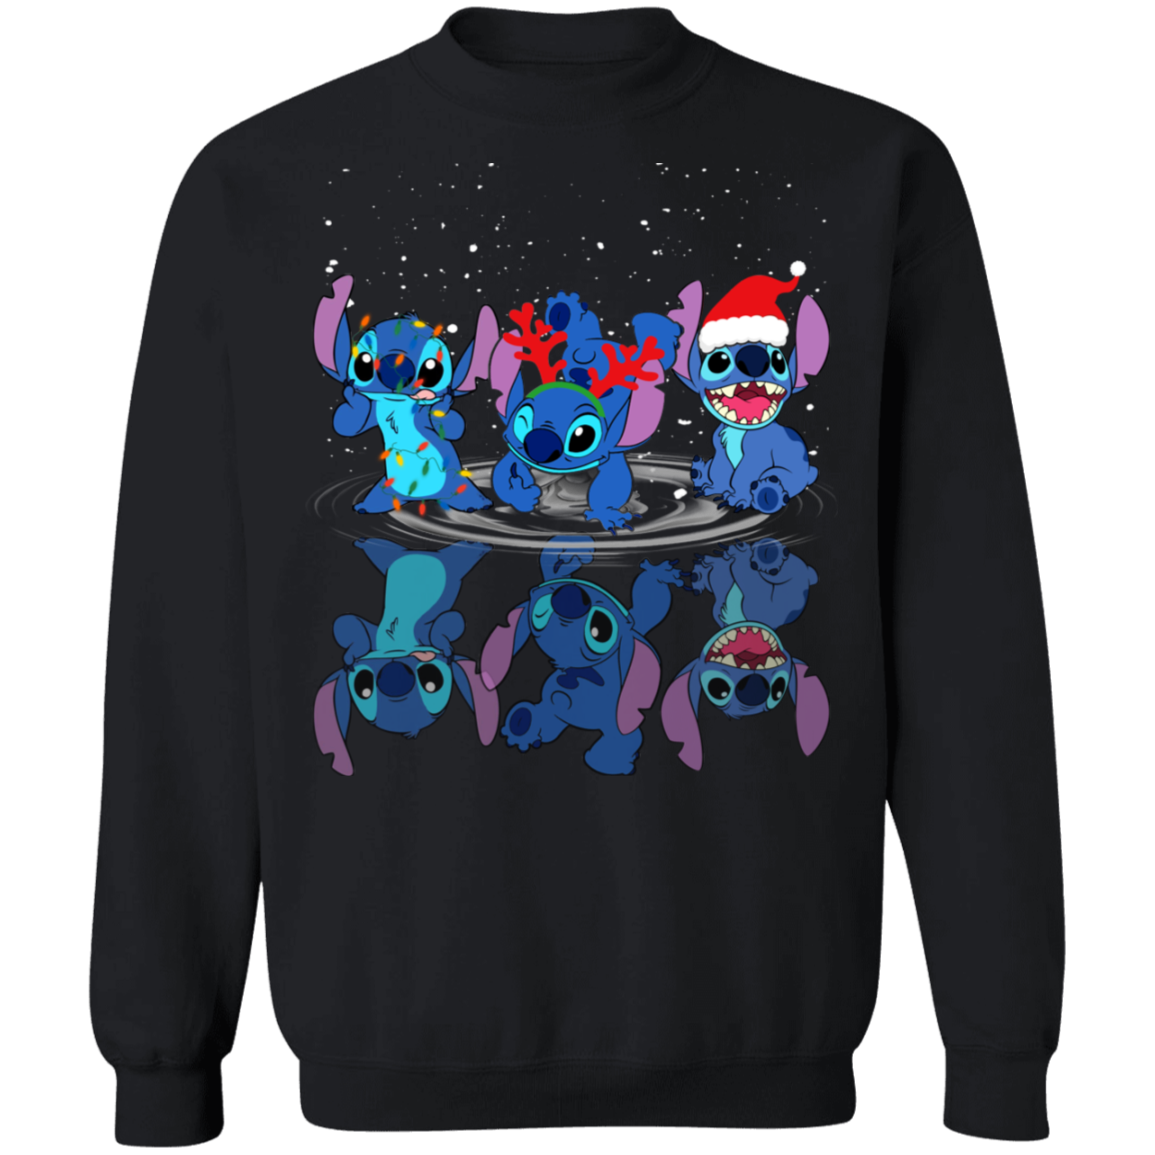 Stitch Dance Crewneck Pullover Sweatshirt